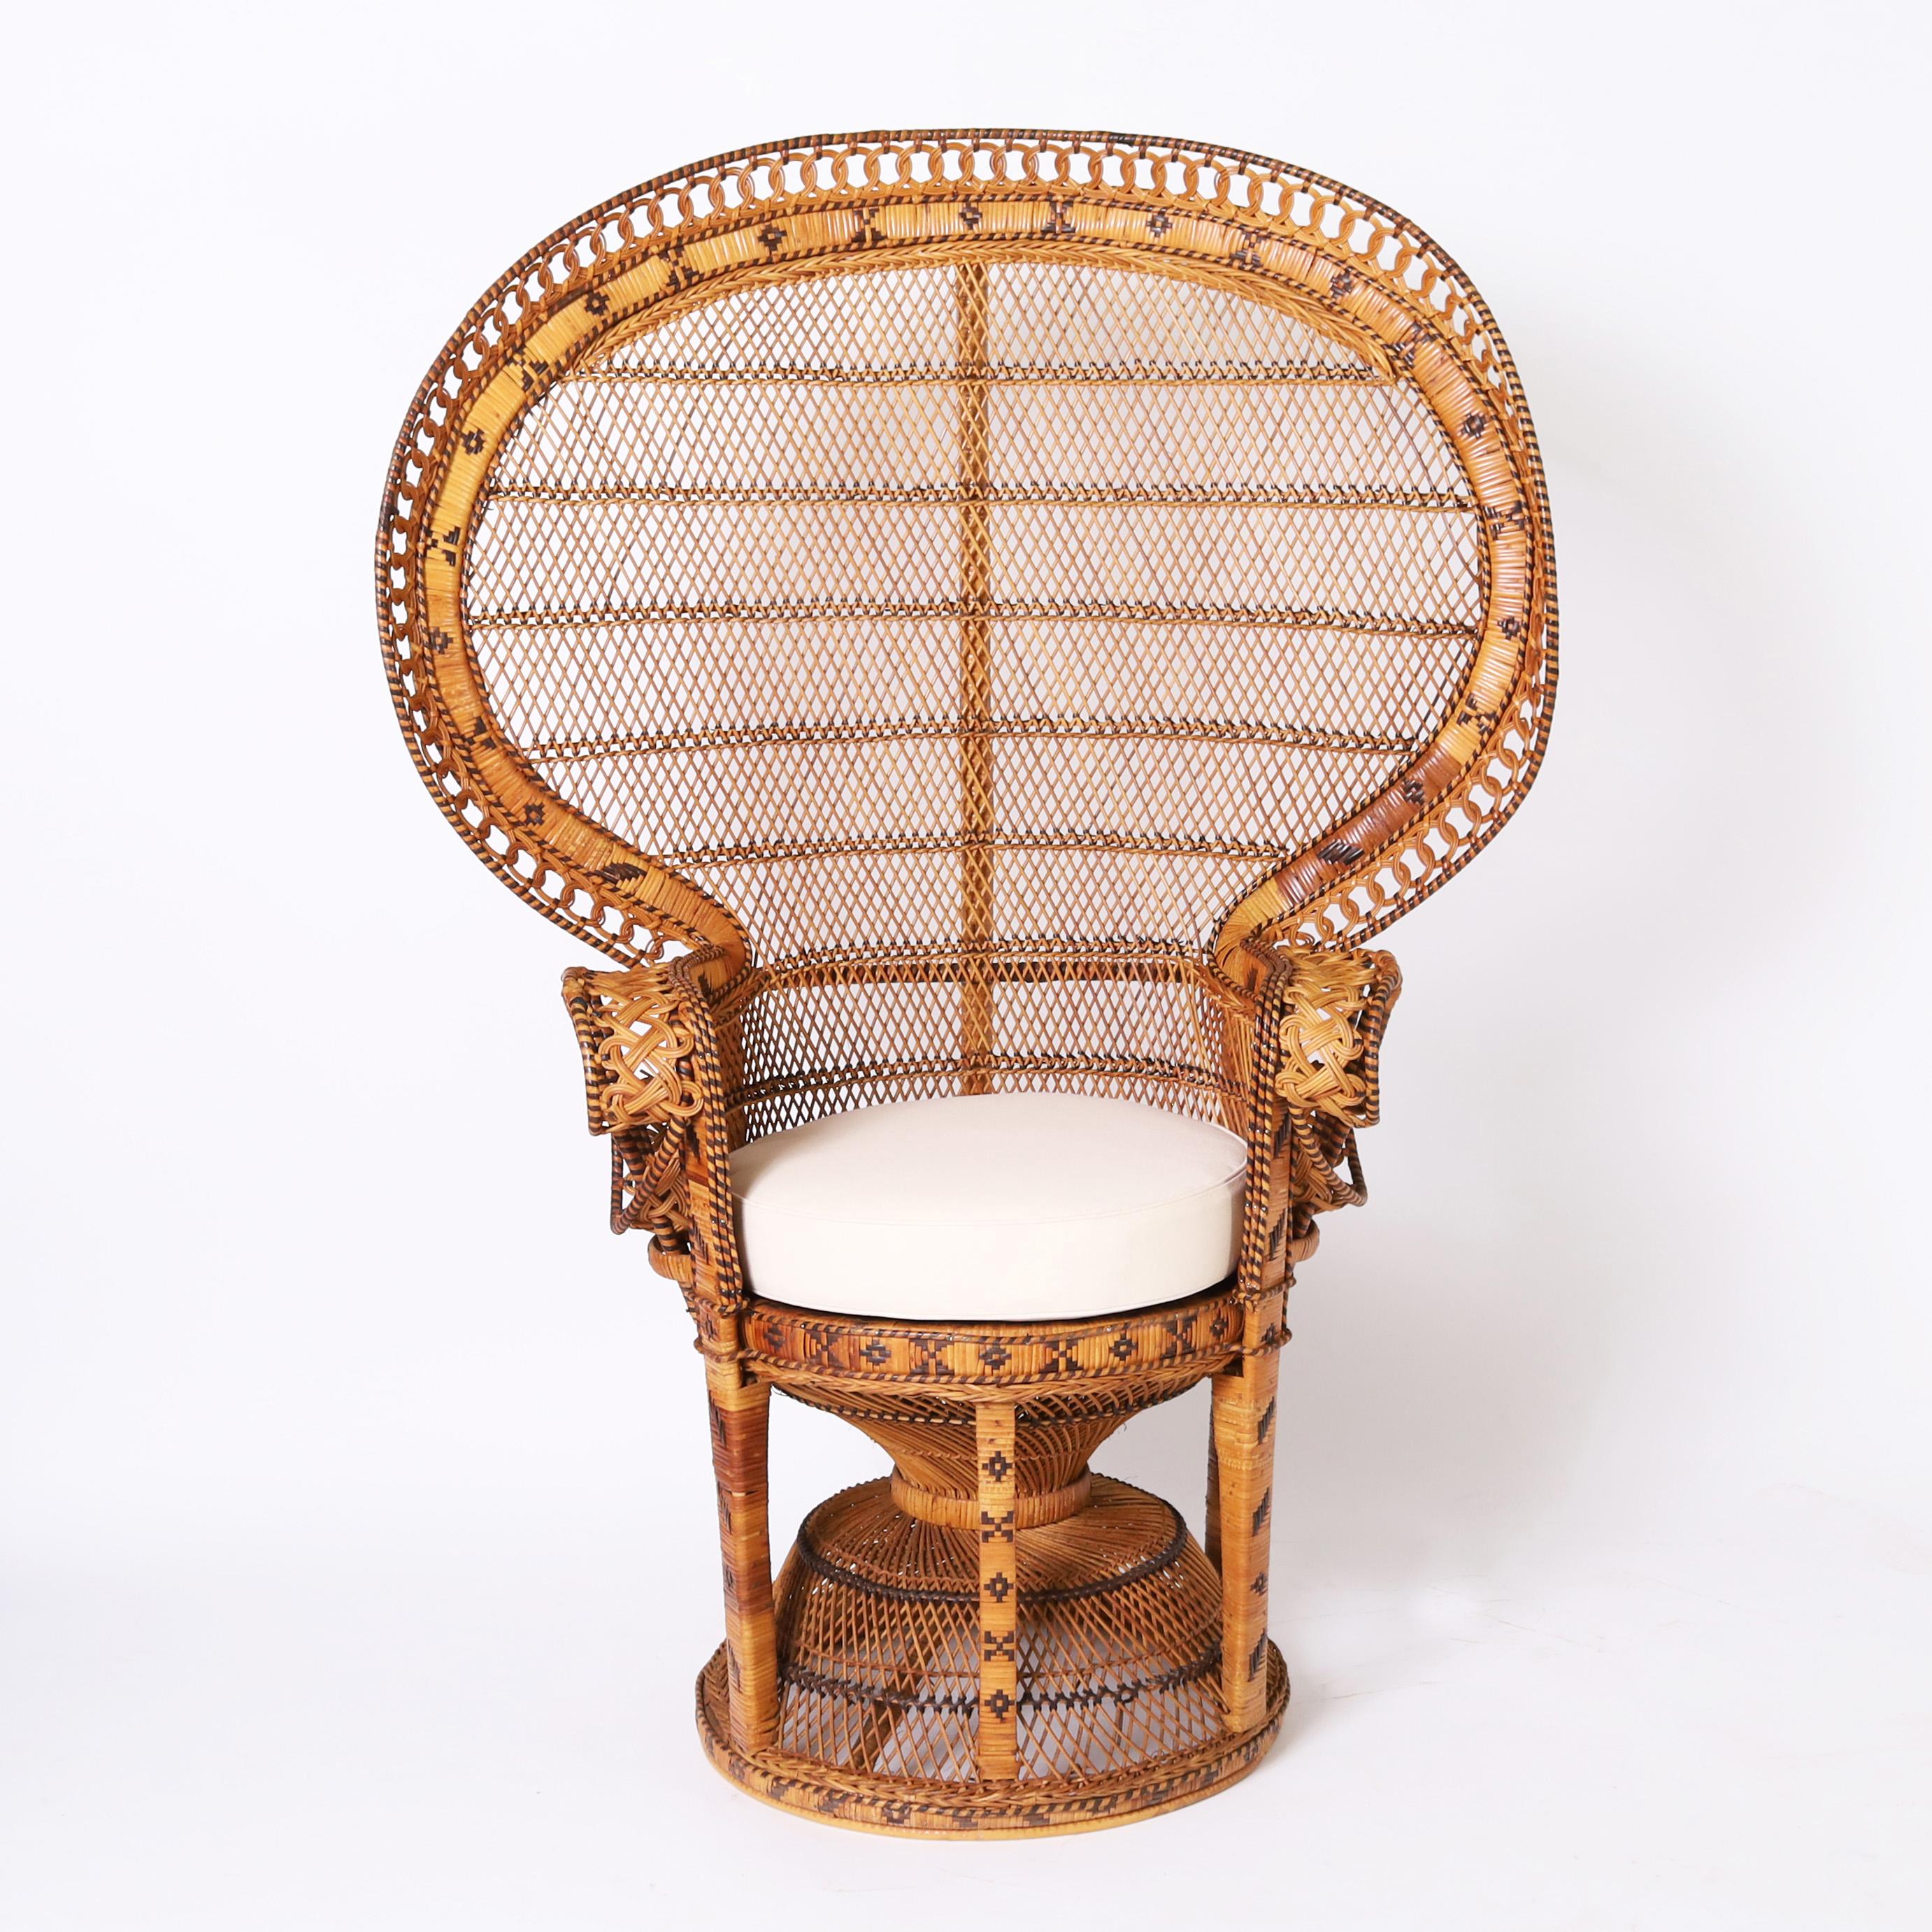 Chaise et pouf paon de l'Inde d'iCon, fabriqués à la main en osier et en rotin, dans une forme iconique avec des accents géométriques symboliques peints. 

Tabouret mesure H : 18 DM : 17